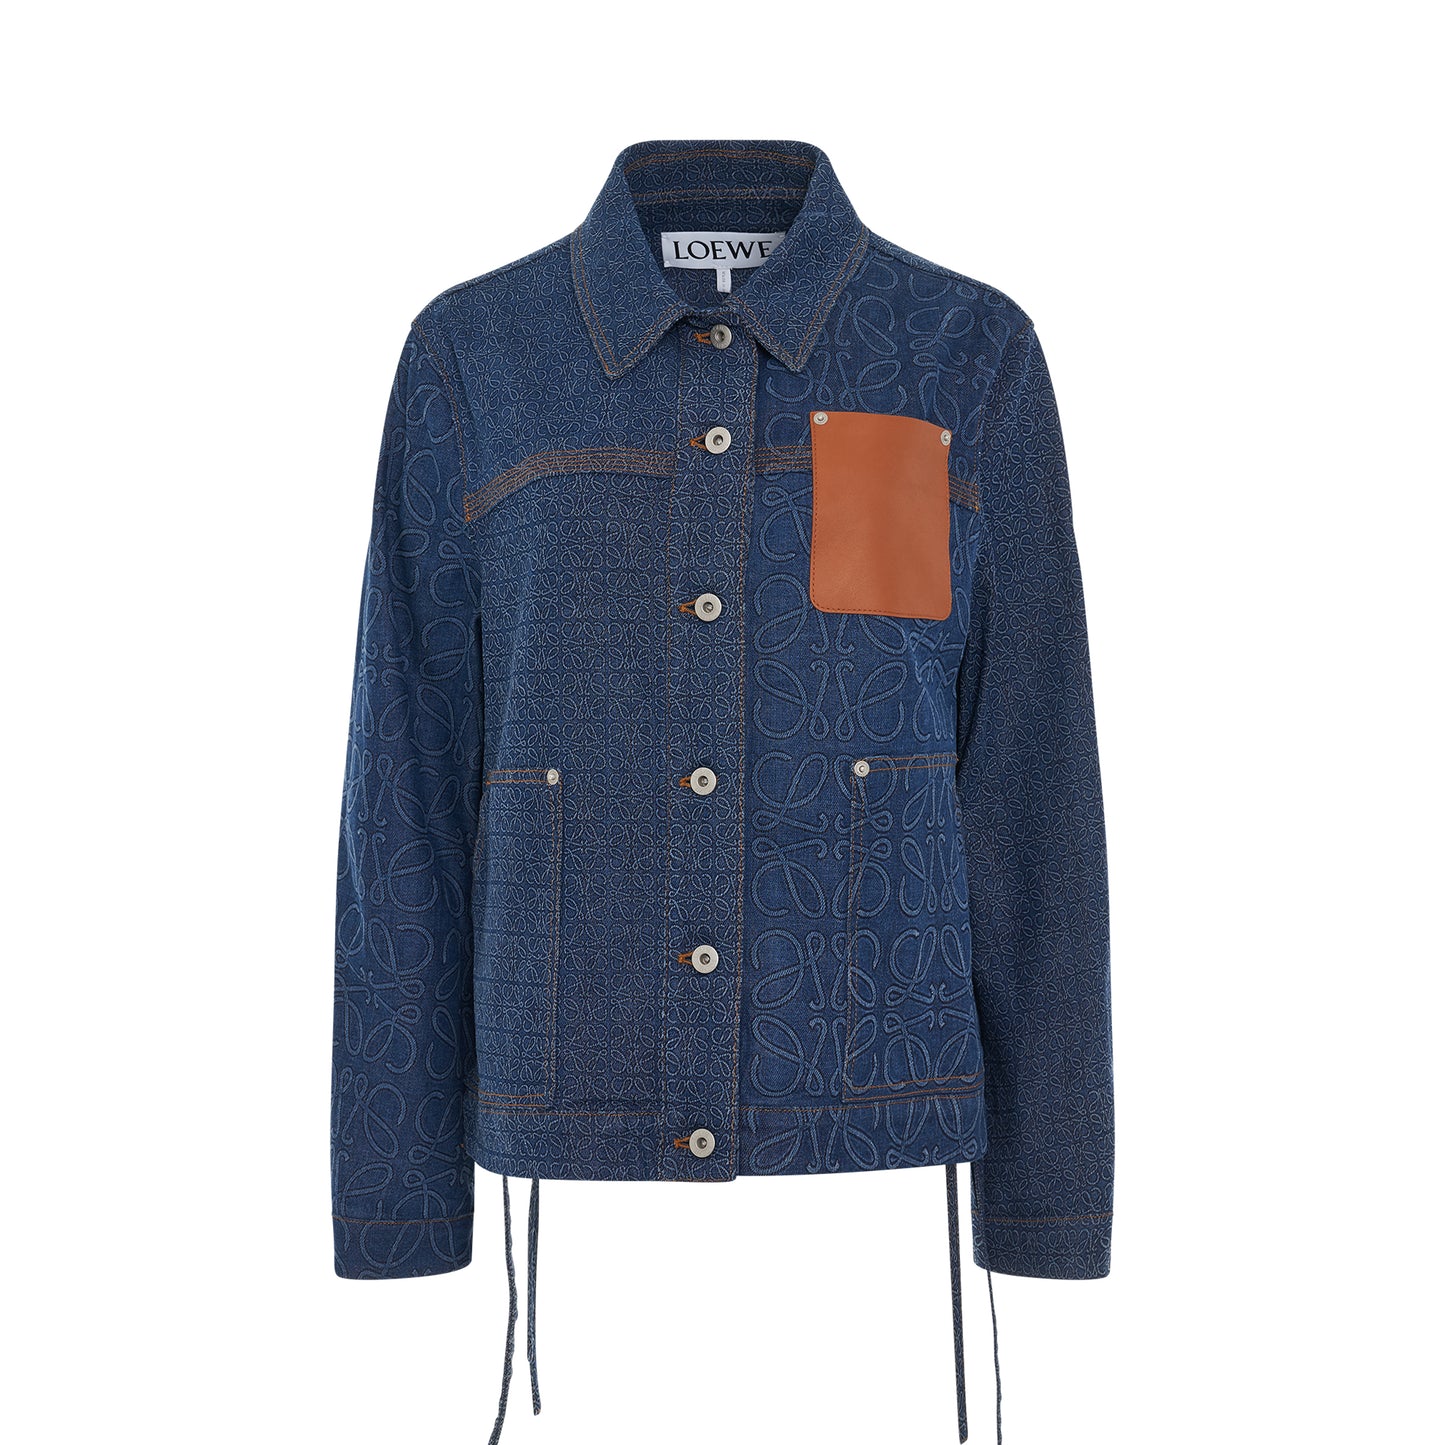 Anagram Workwear Denim Jacket in Indigo Blue